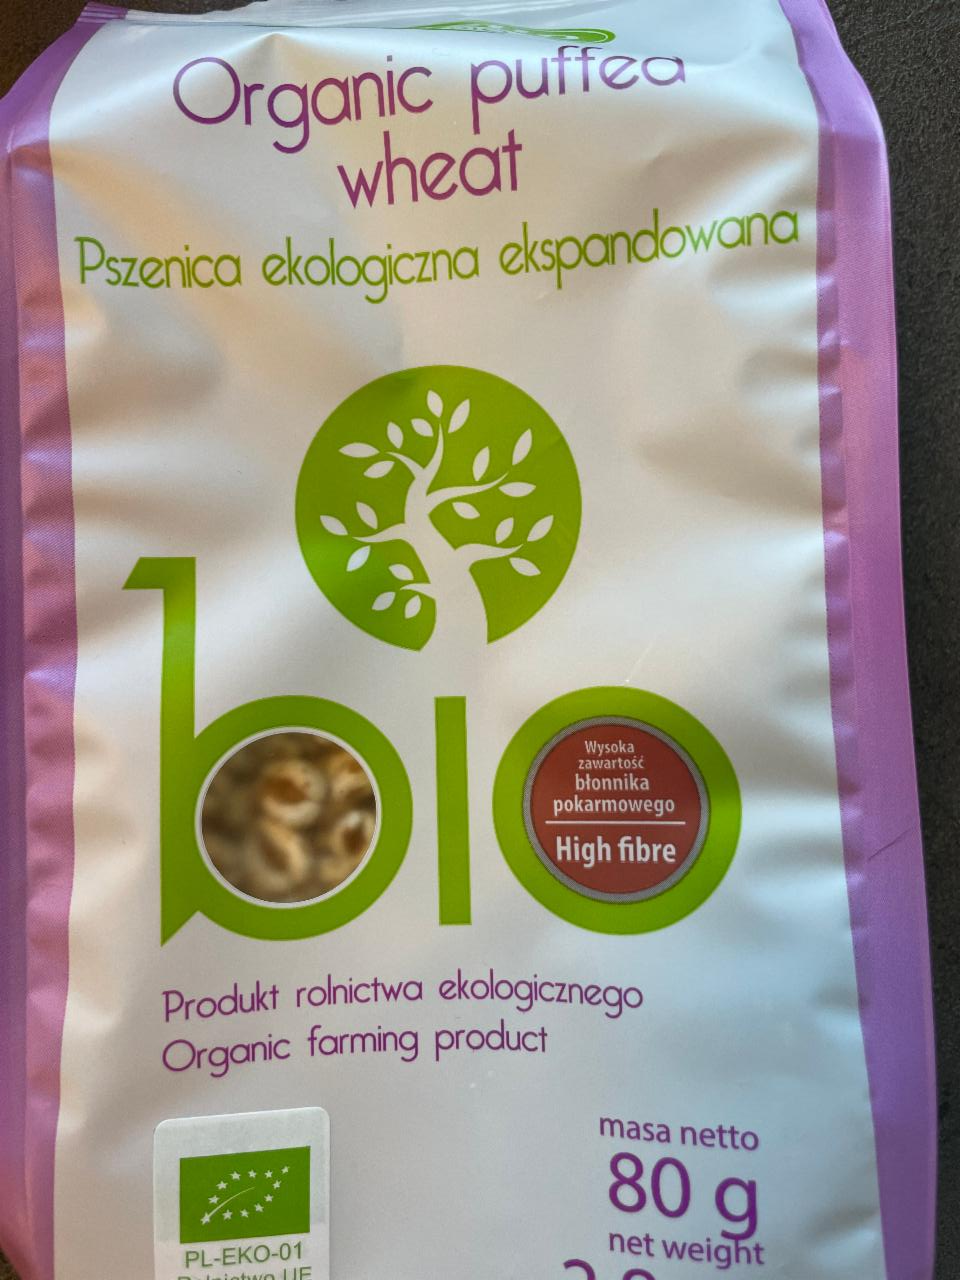 Zdjęcia - Organic puffed wheat Lestello